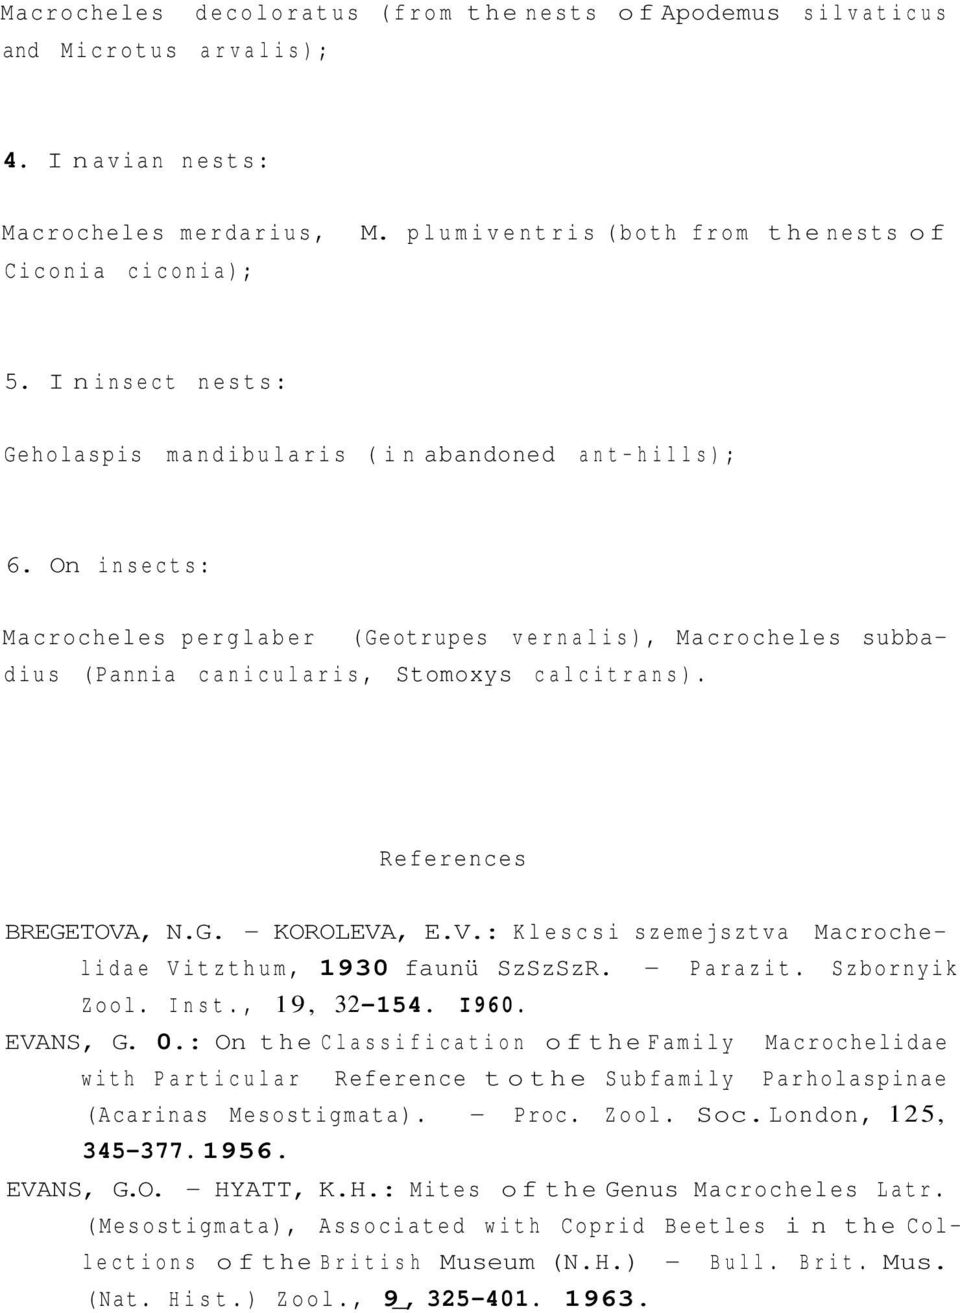 References BREGETOVA, N.G. - KOROLEVA, E.V.: Klescsi szemejsztva Macrochelidae Vitzthum, 1930 faunü SzSzSzR. - Parazit. Szbornyik Zool. Inst., 19, 32-154. I960. EVANS, G. 0.